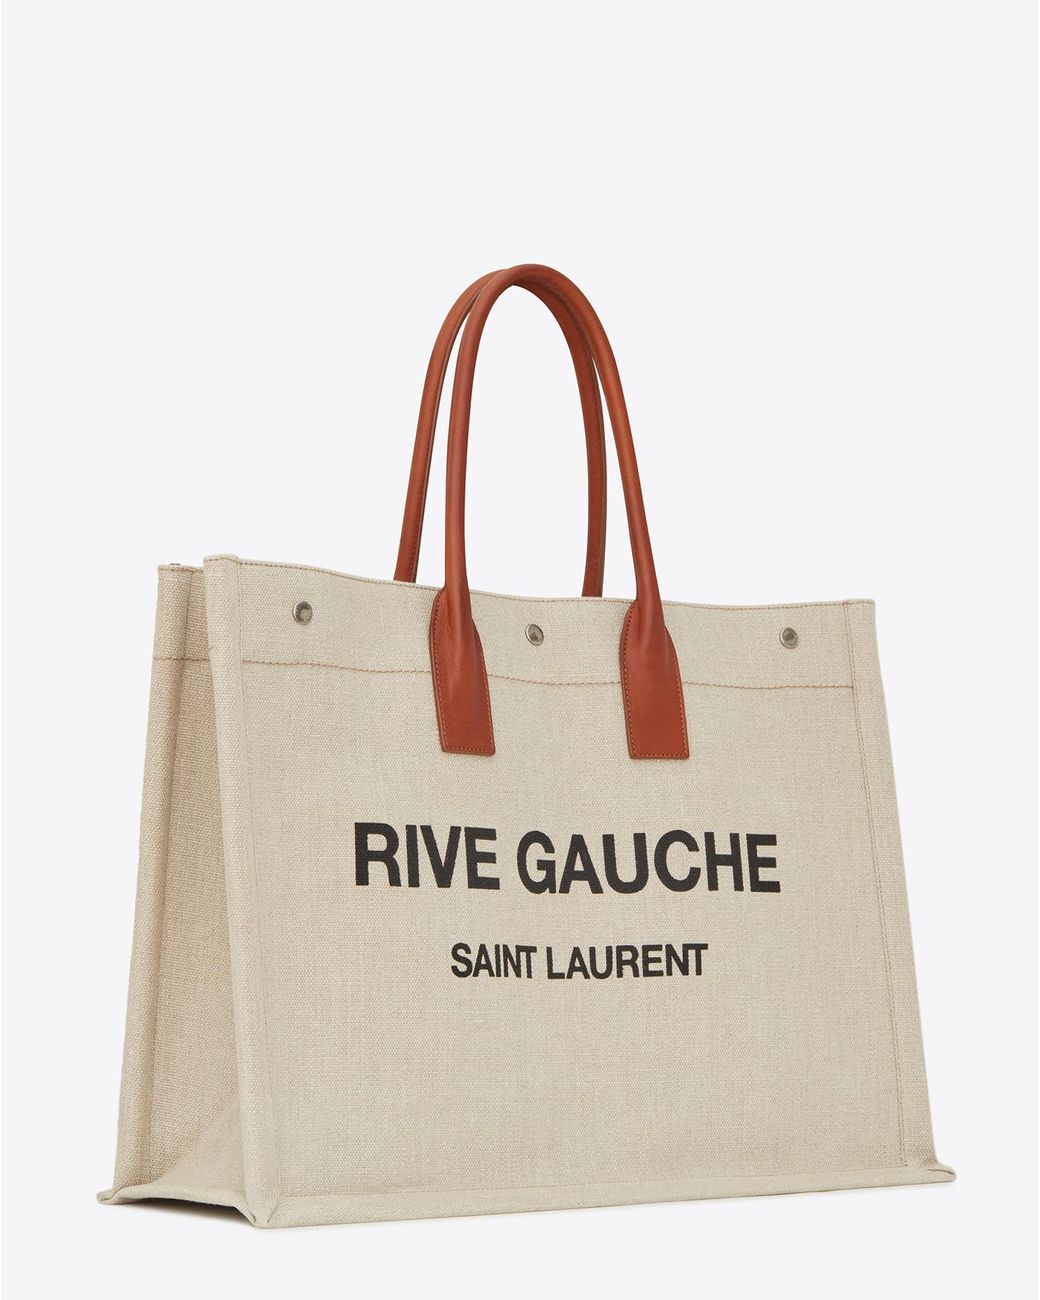 Saint Laurent Rive Gauche Tote Bag in Natural Sand & Brick